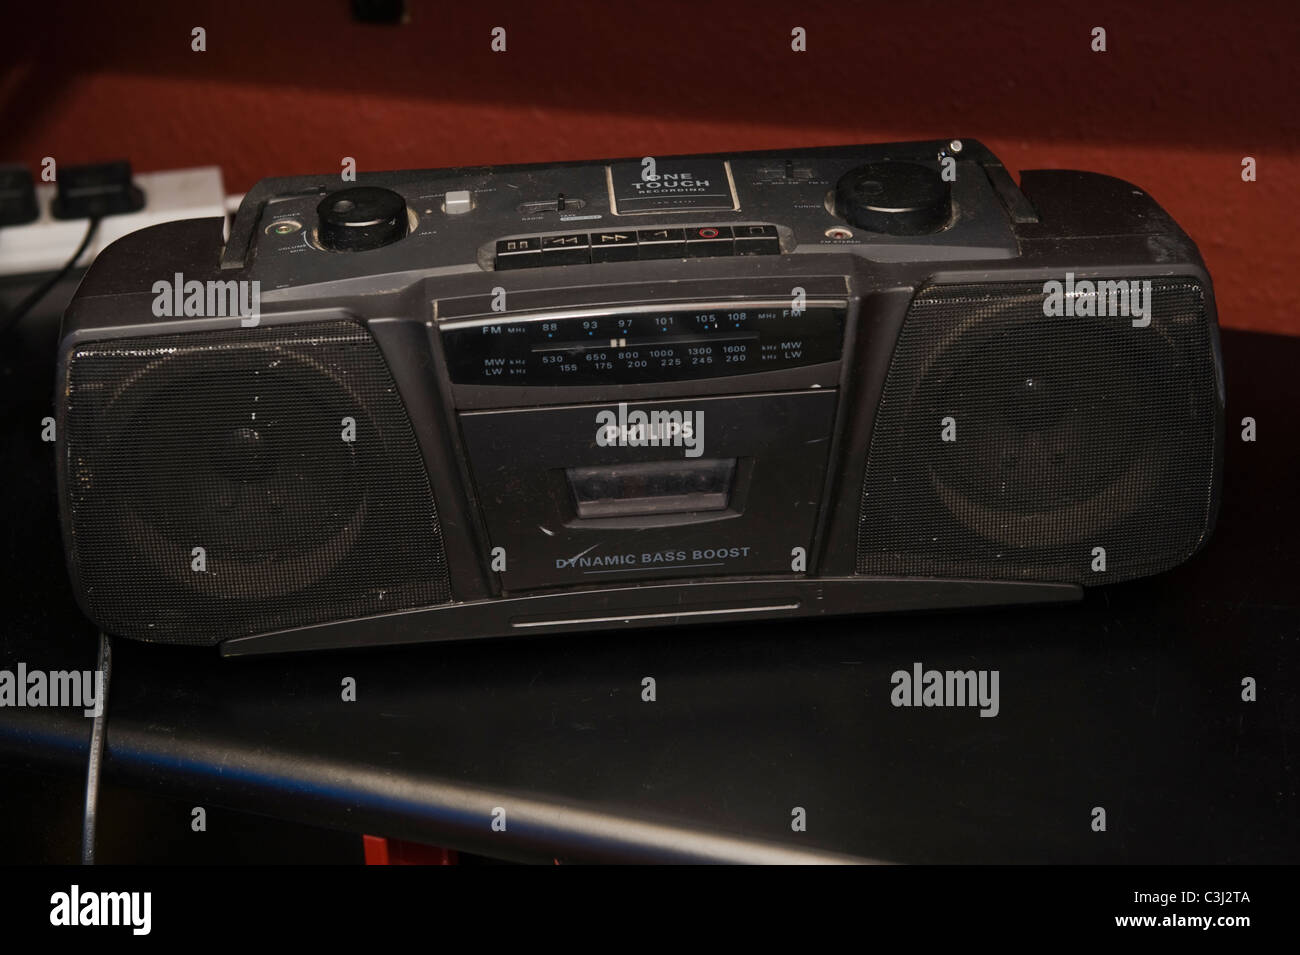 Philips cassette Banque de photographies et d'images à haute résolution -  Alamy